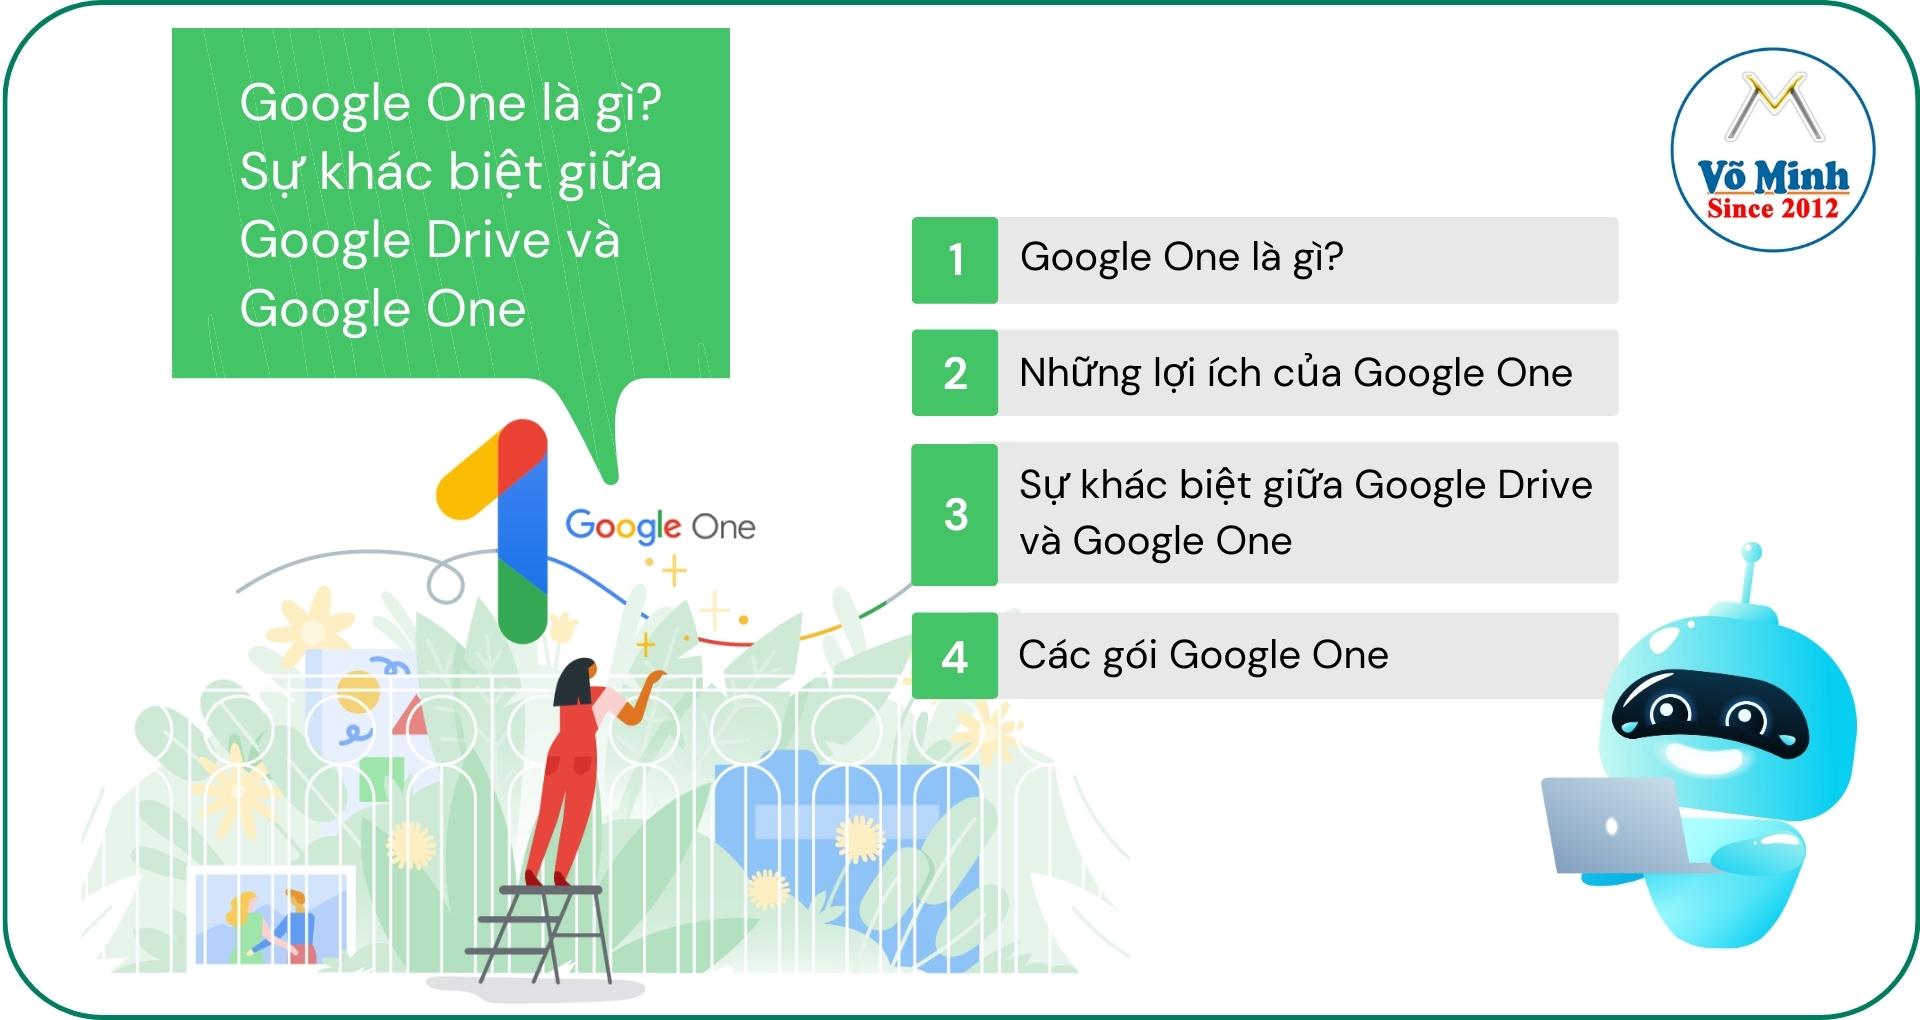 Google One là gì? Sự khác biệt giữa Google Drive và Google One